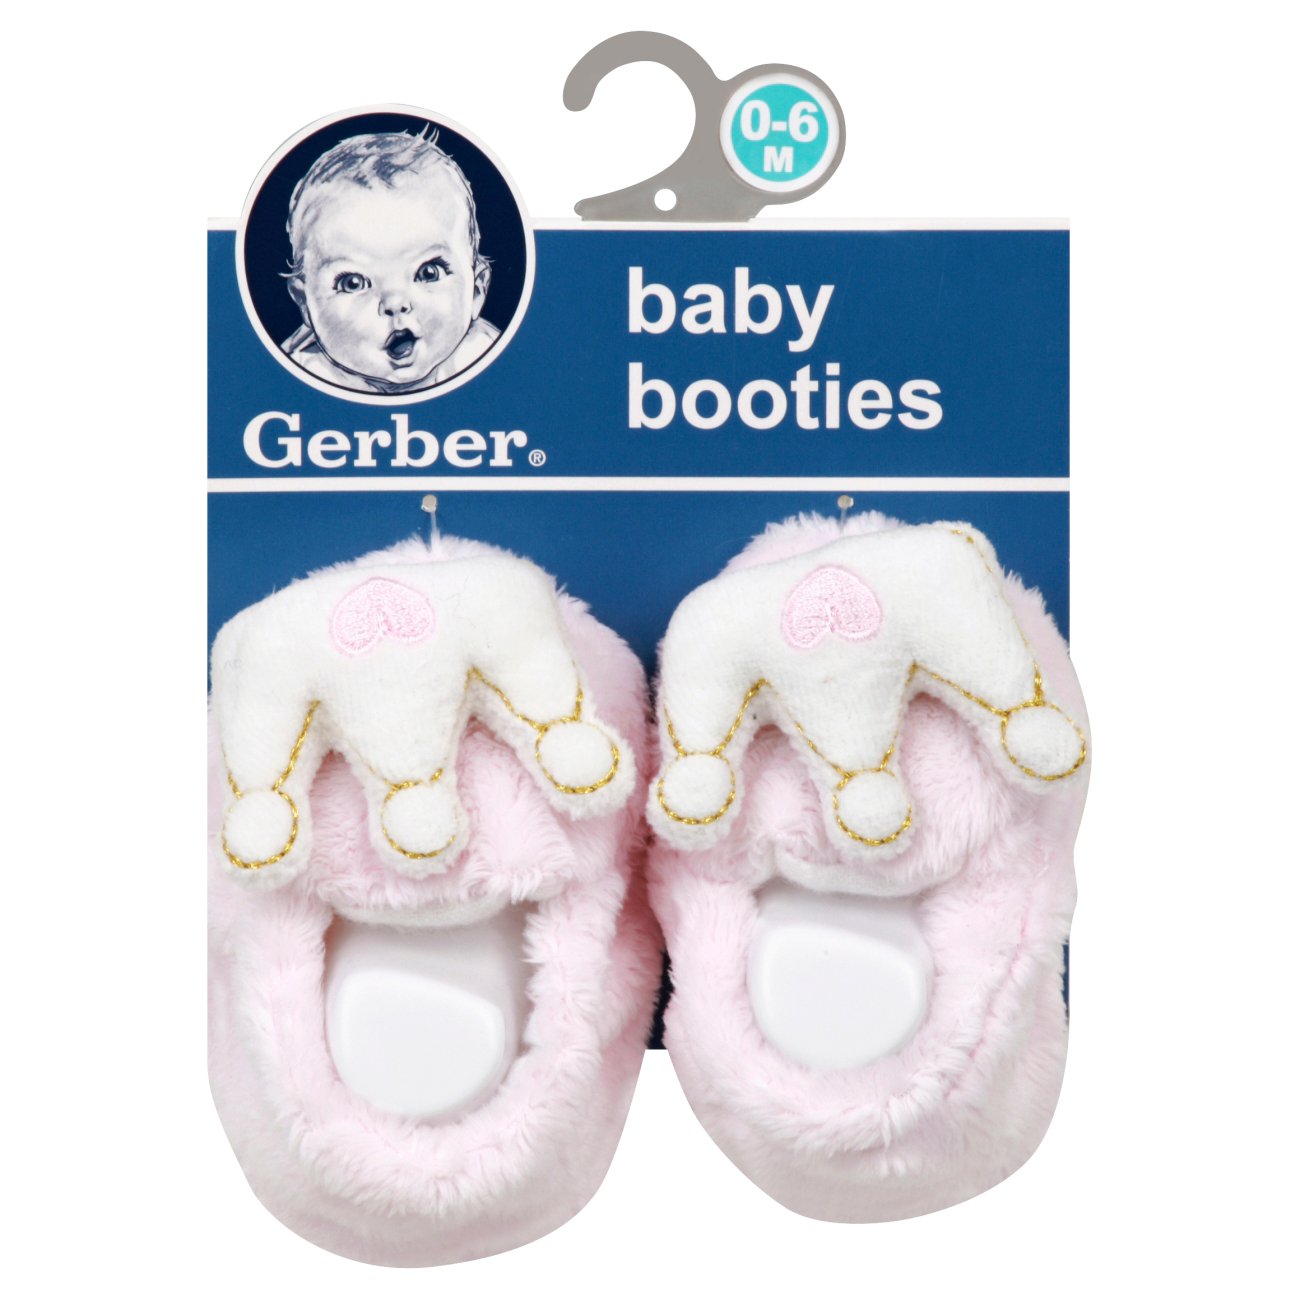 gerber baby booties